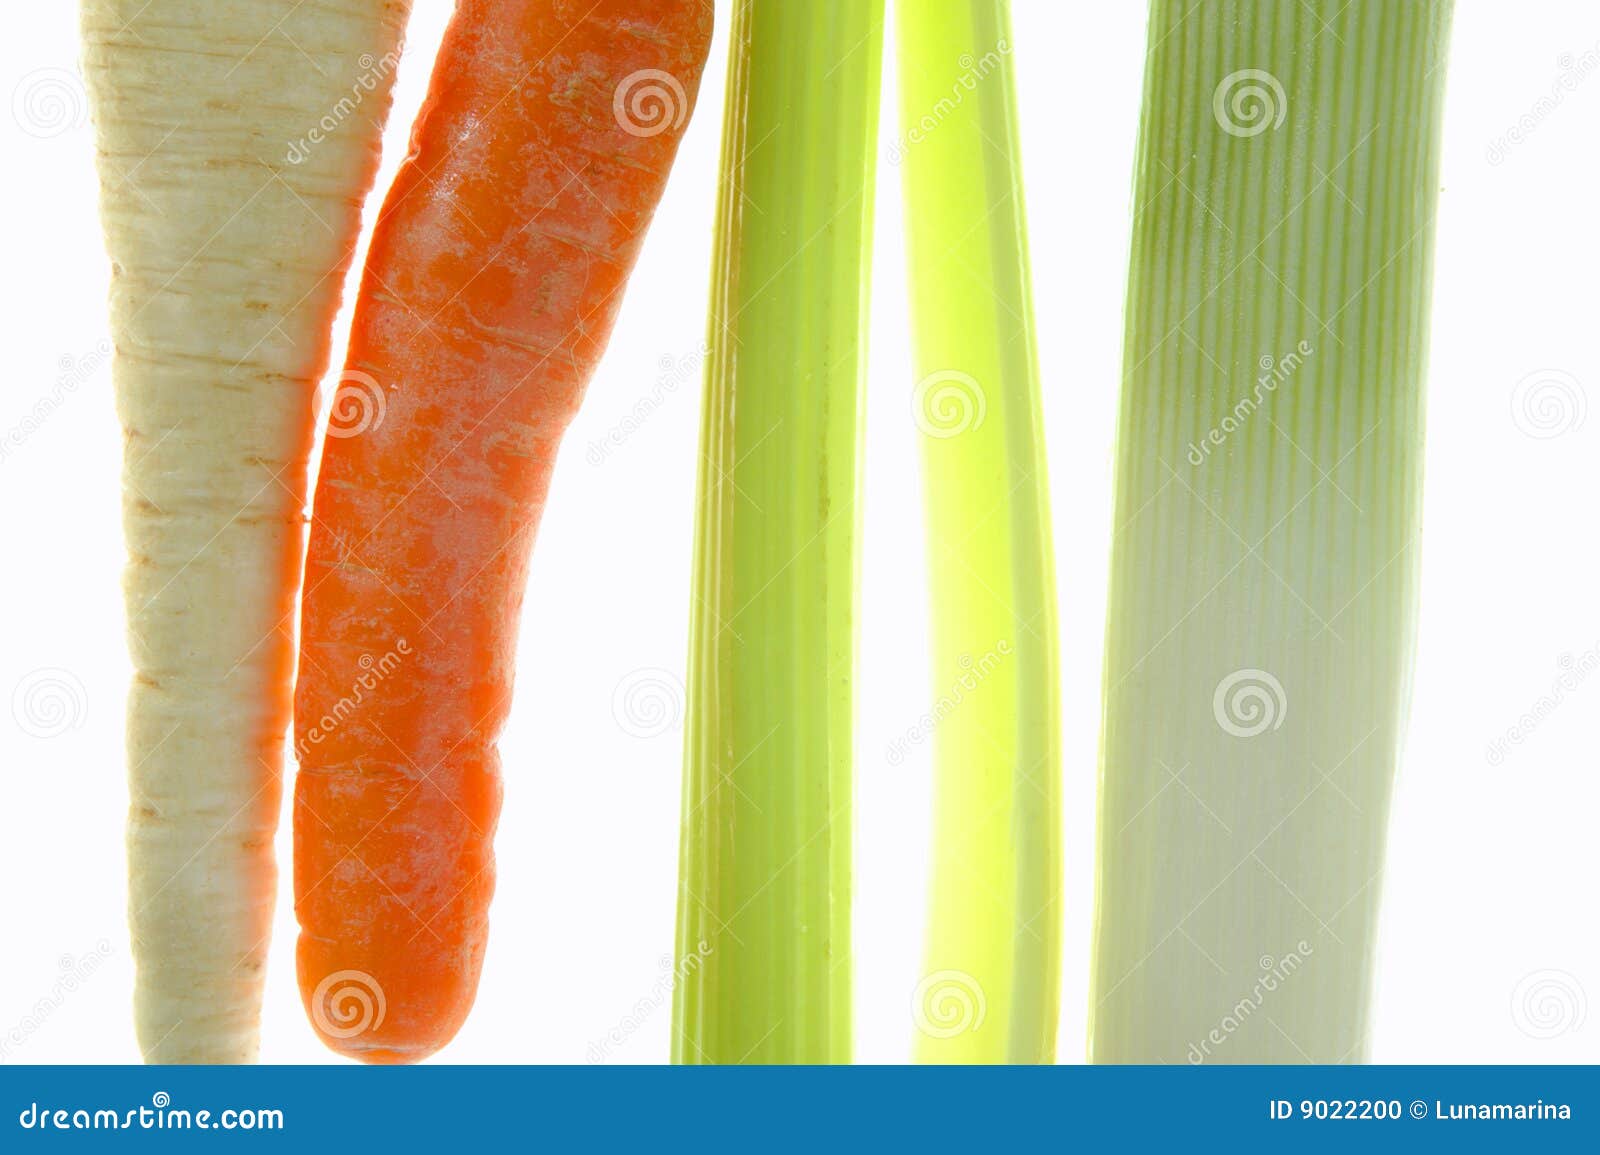 лук-порей сельдерея моркови над прозрачной белизной. лук-порей сельдерея моркови предпосылки над белизной студии прозрачной